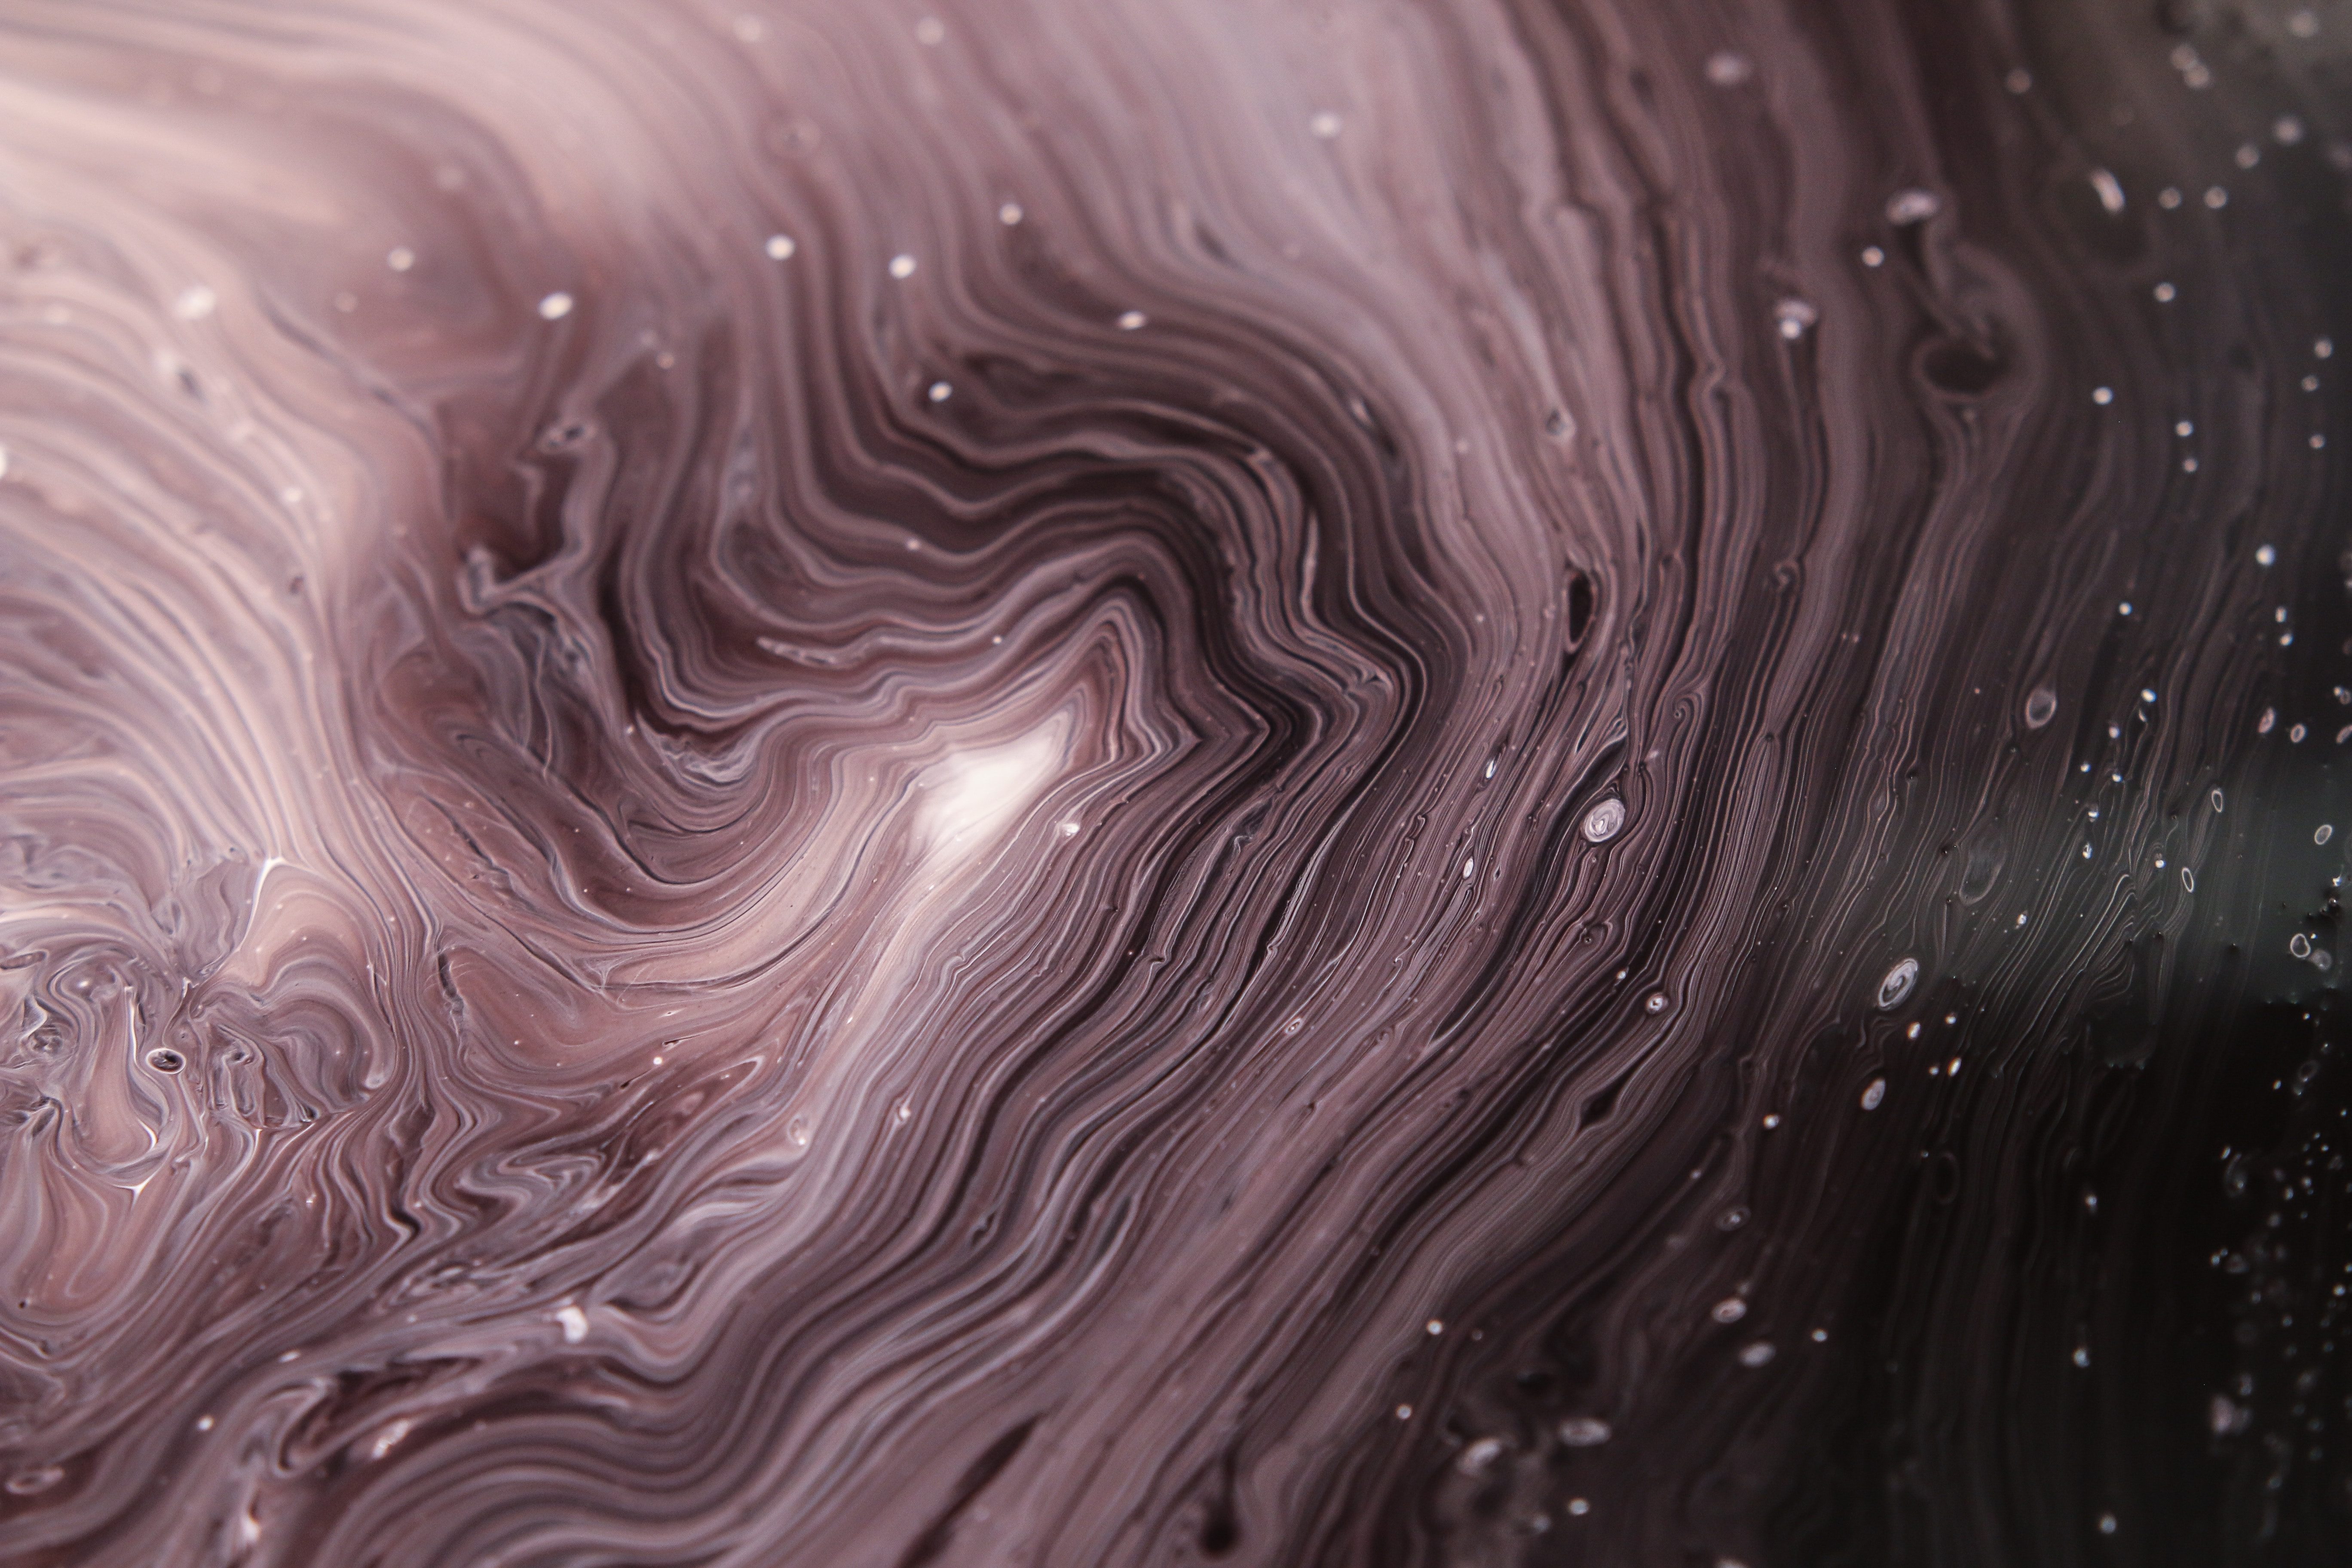 Abstract Fluid Art iPhone Wallpaper - iDrop News